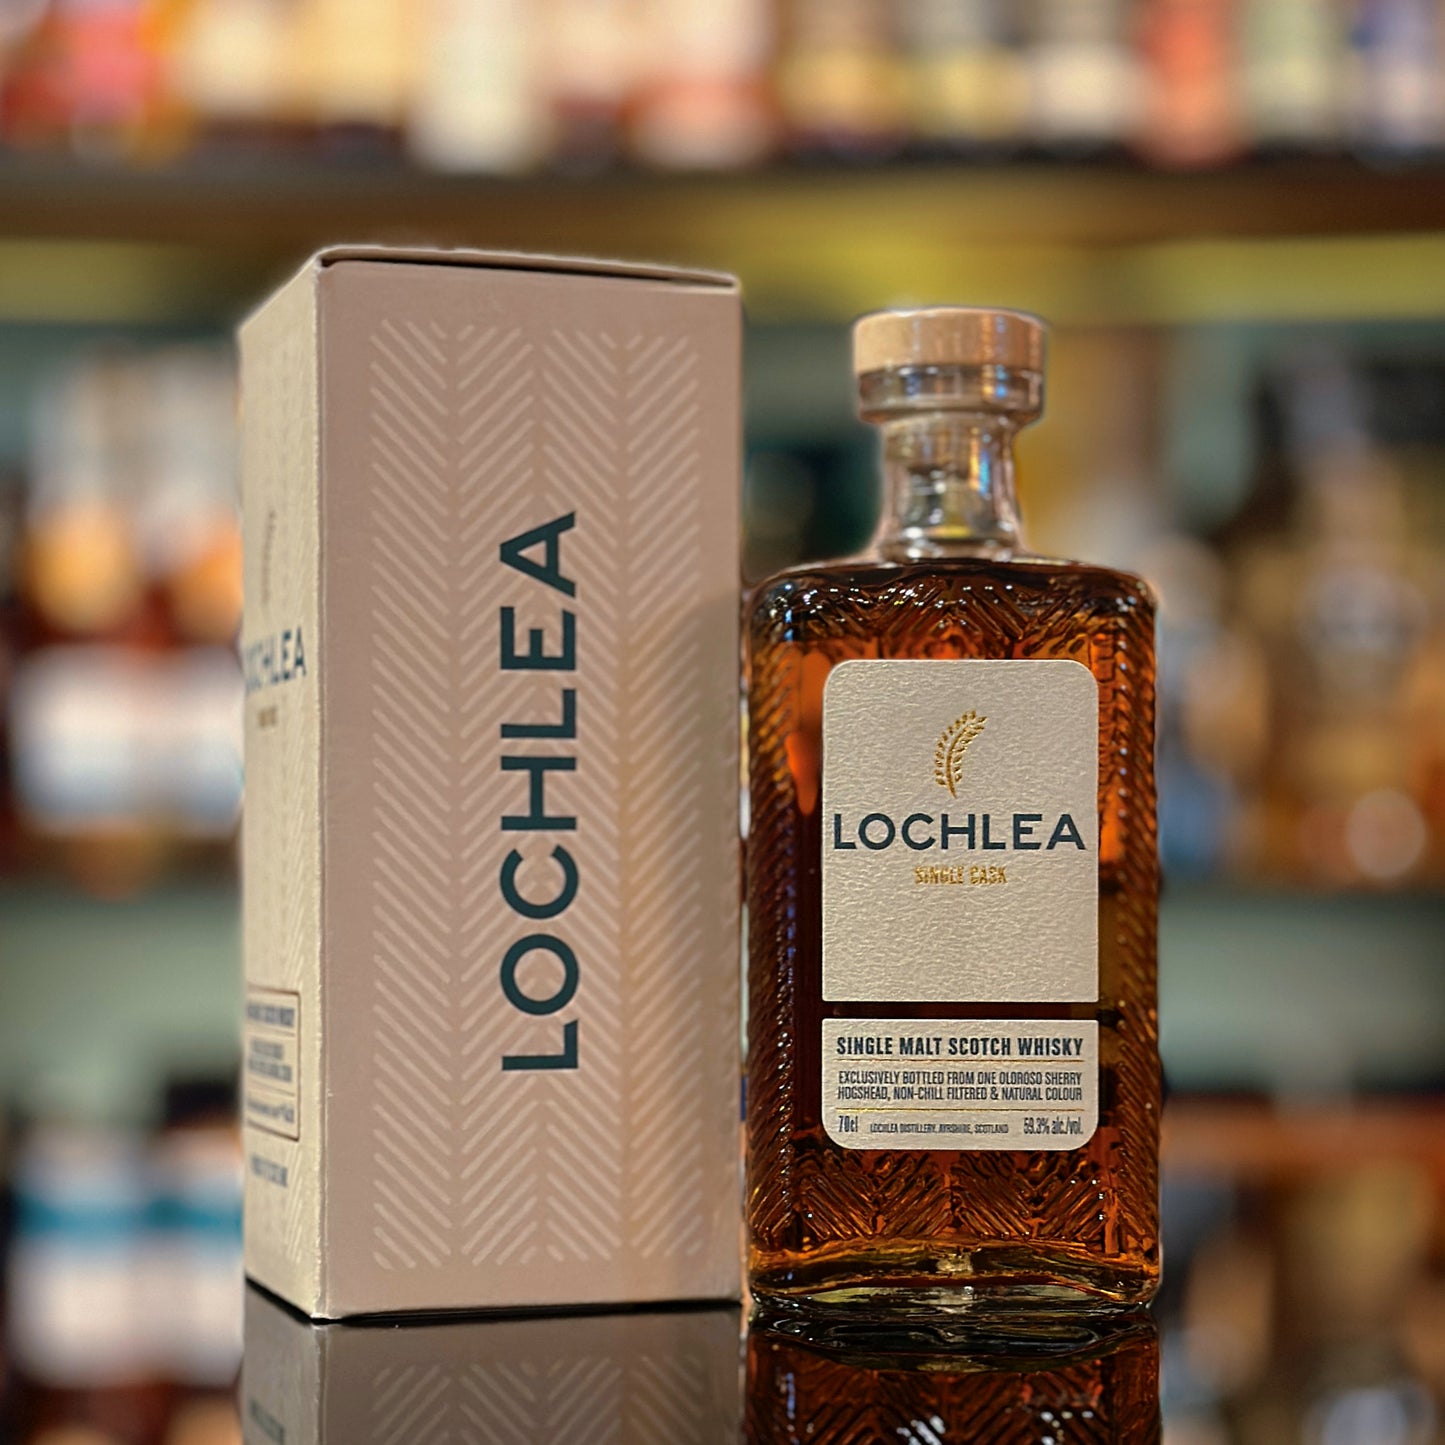 Lochlea 4 Year Old 2018-2023 Oloroso Sherry Hogshead #271 Single Malt Scotch Whisky